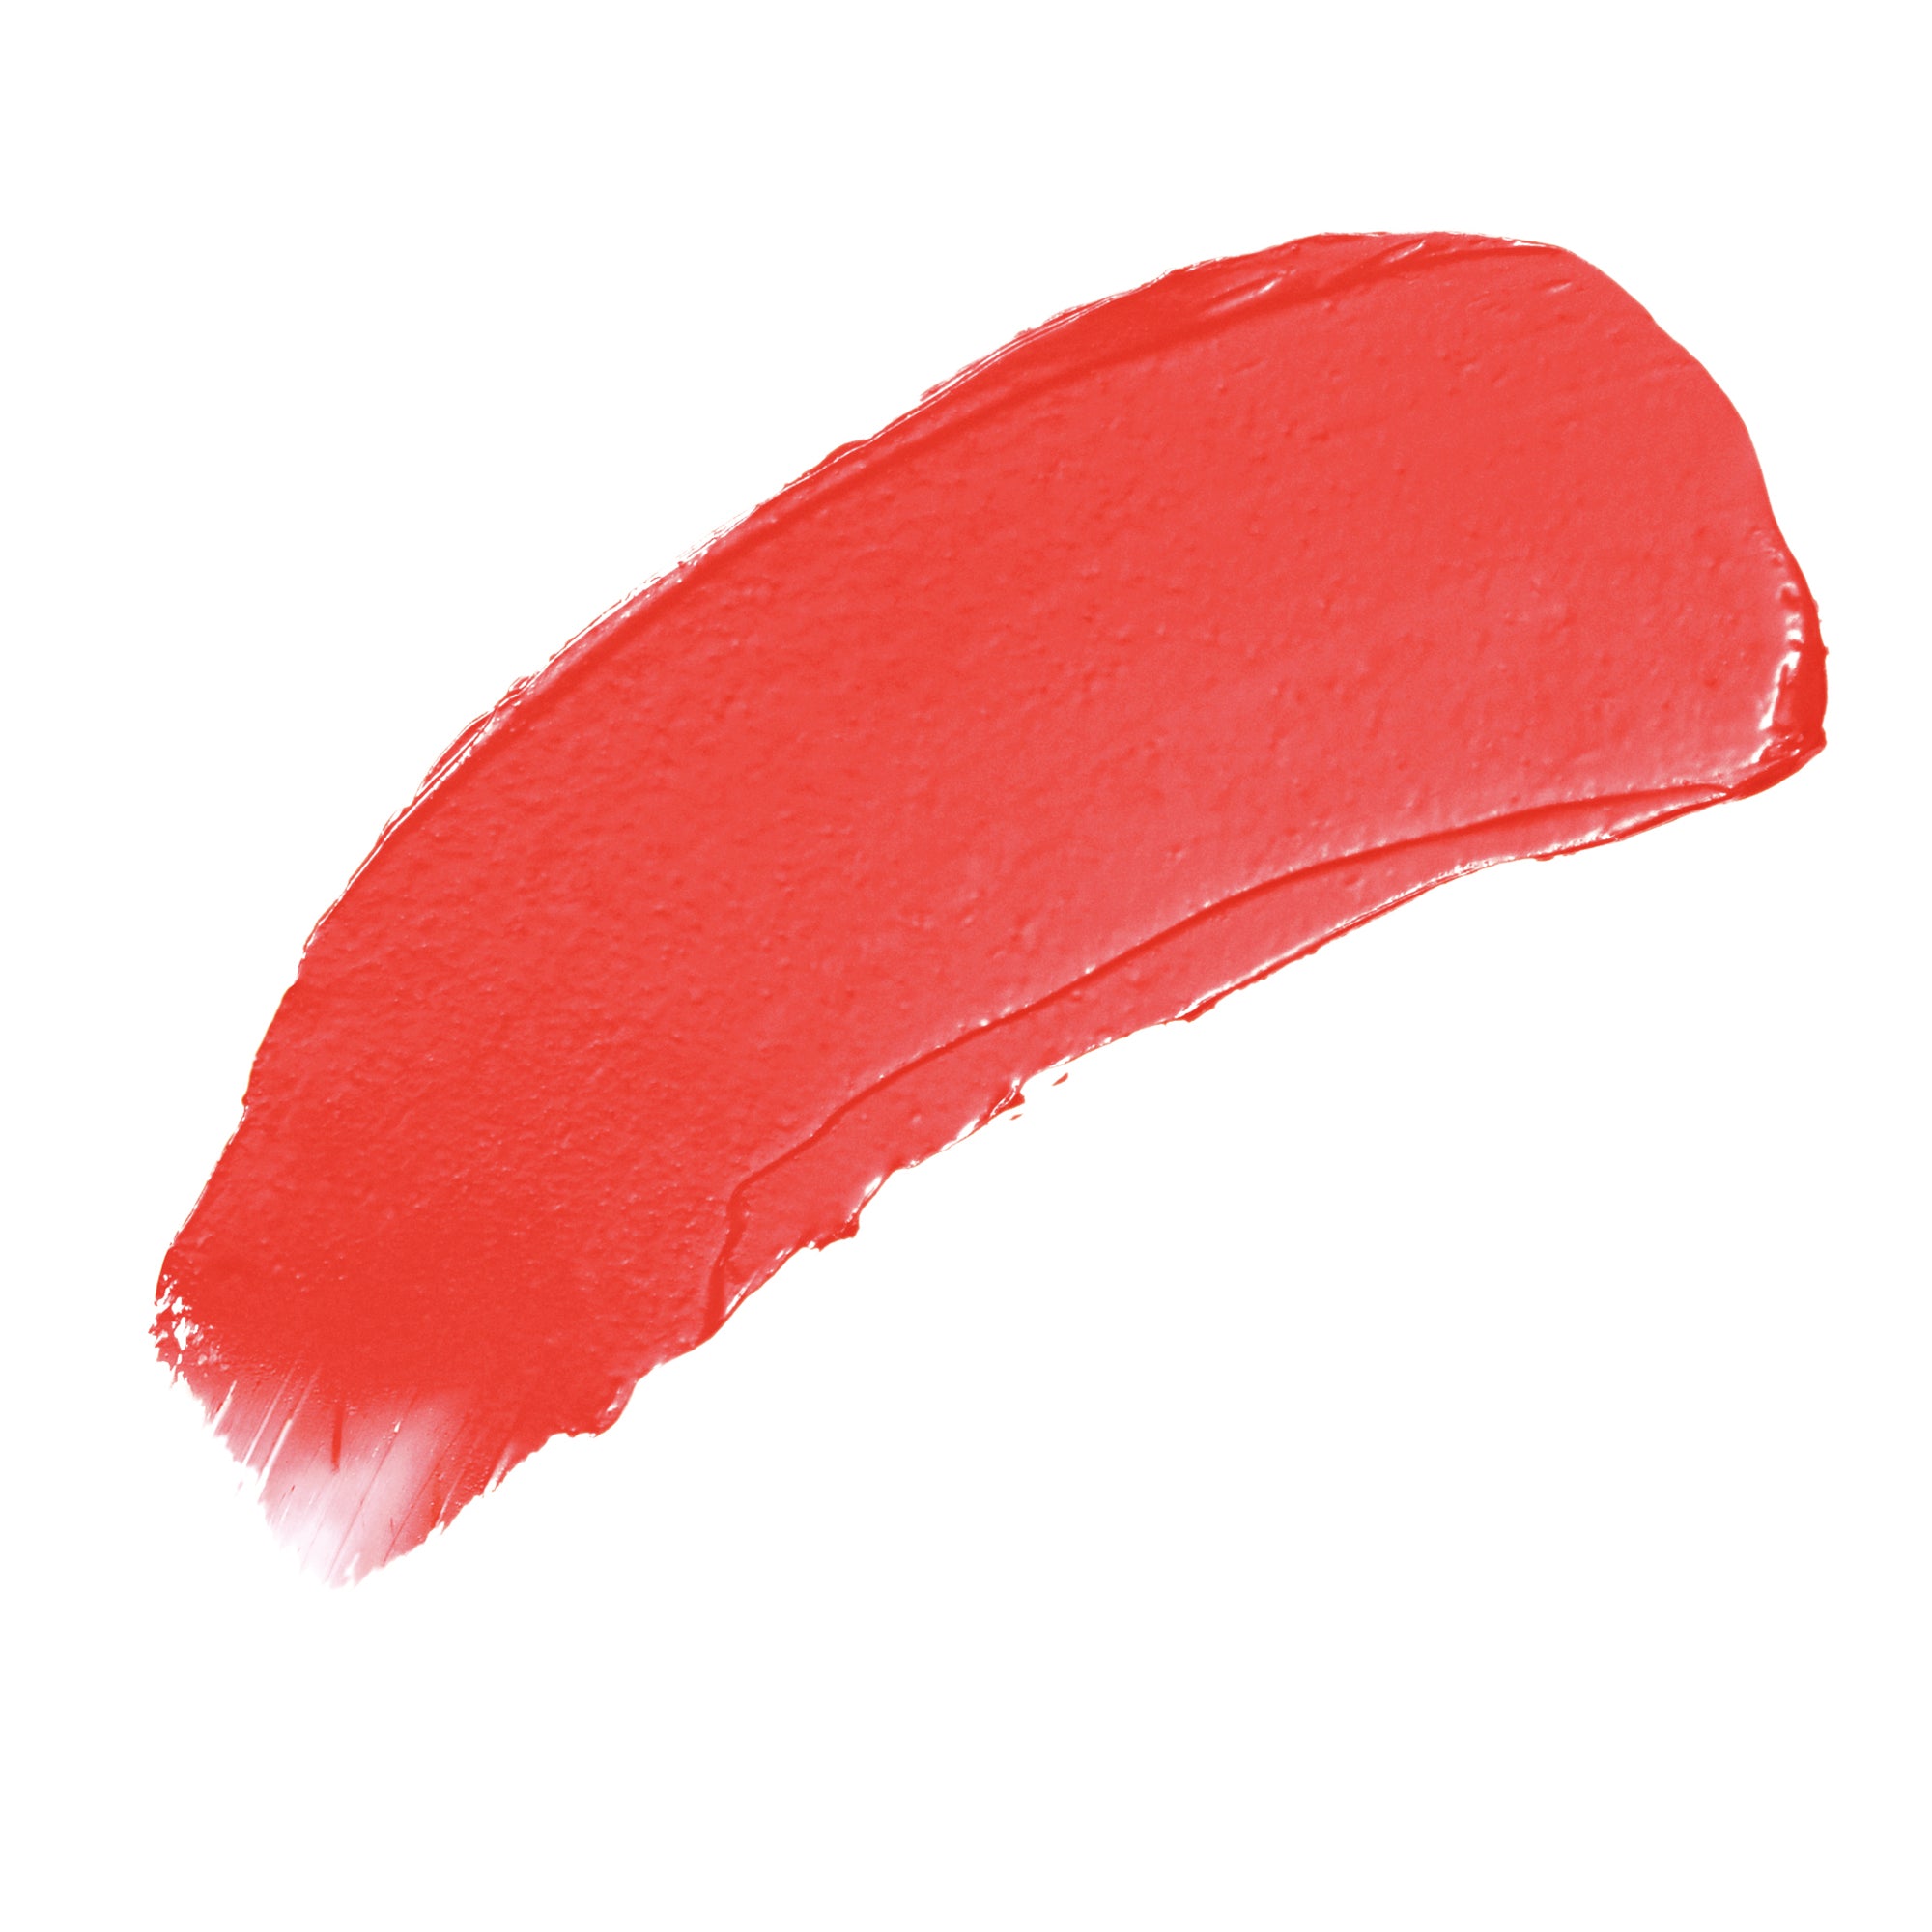 Jane Iredale Triple Luxe Long Lasting Naturally Moist Lipstick / ELLEN